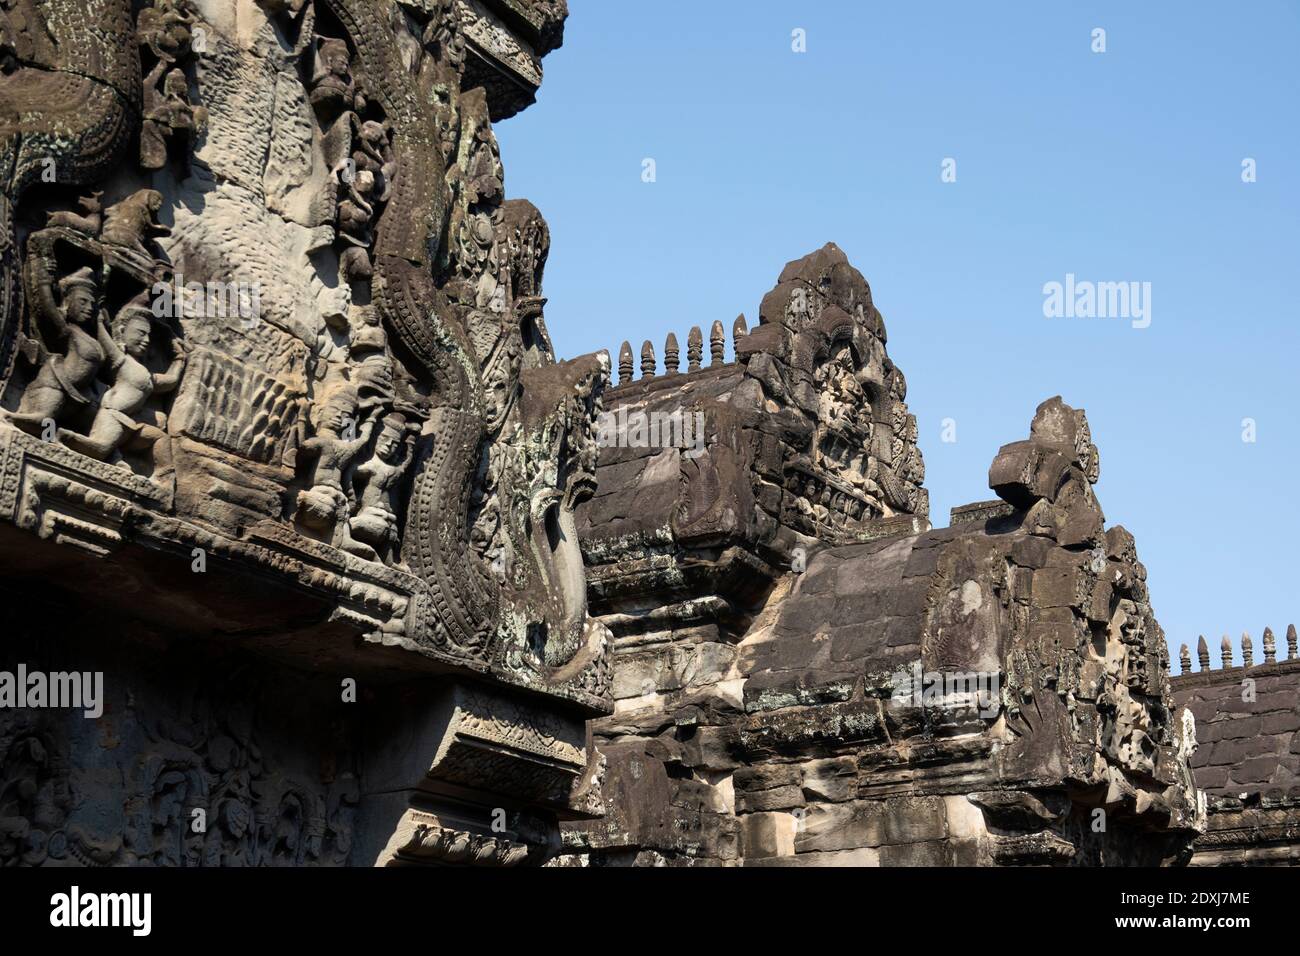 Bajo relieve en las paredes de Angkor Foto de stock